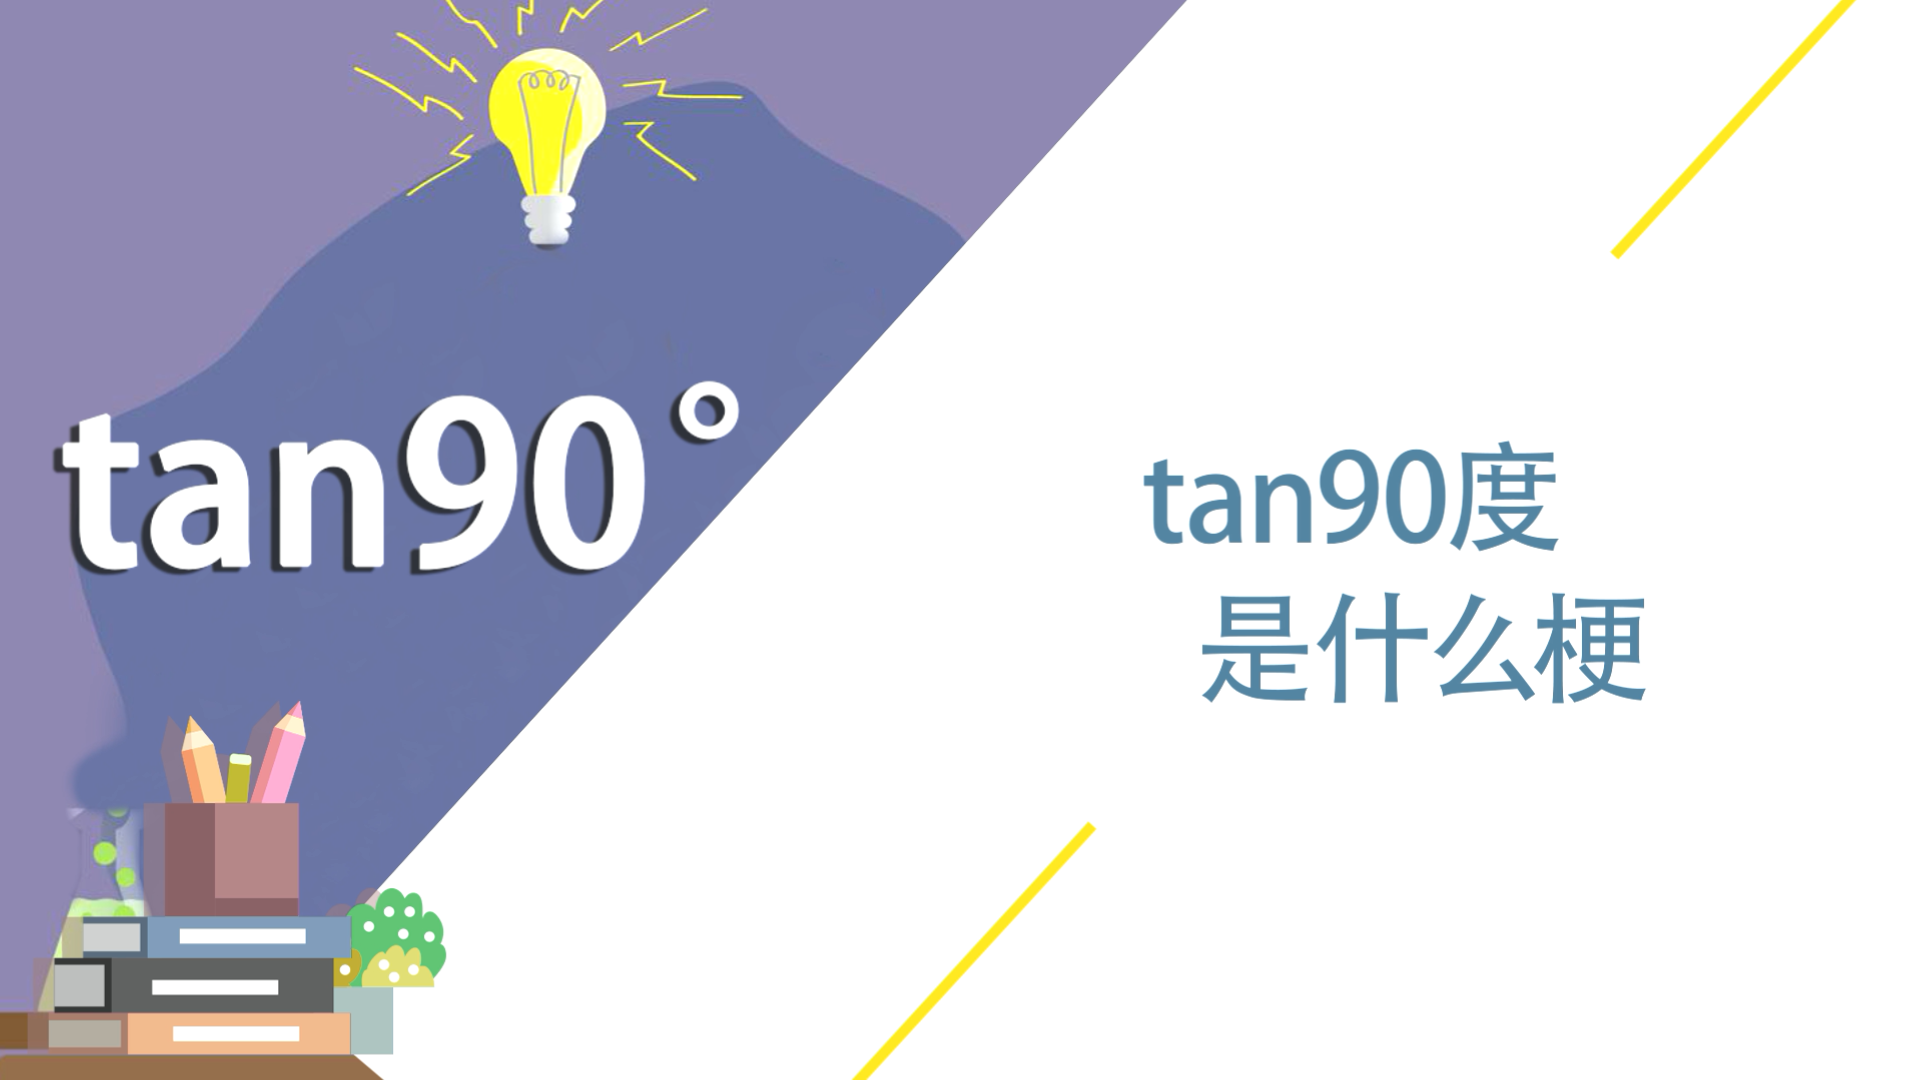 tan90度是什么梗